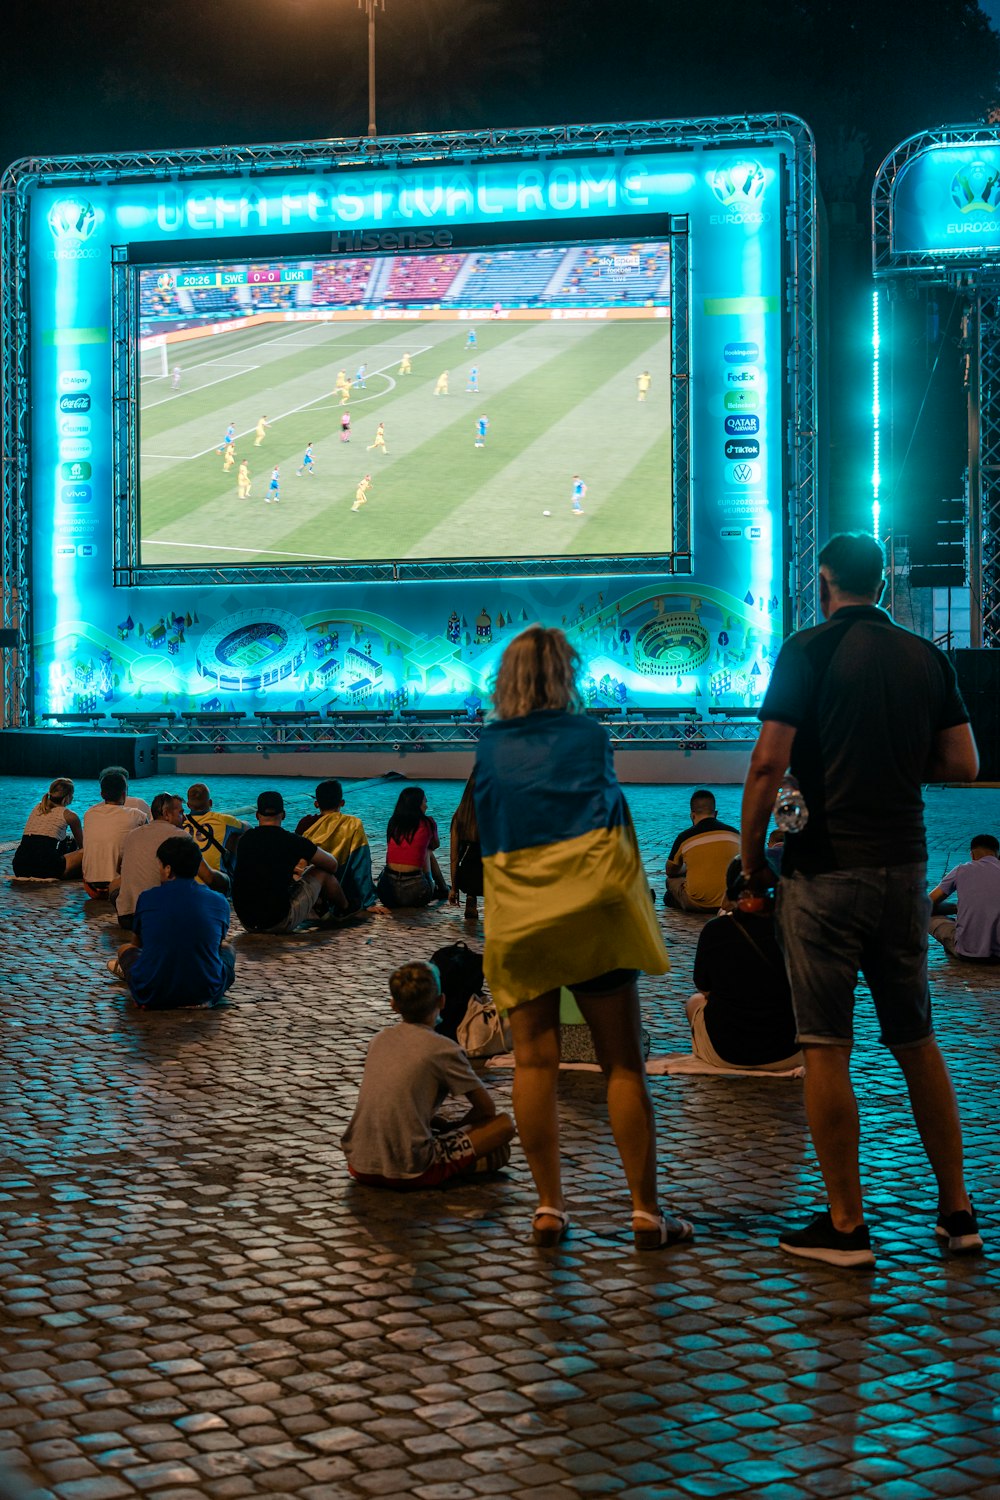 persone sedute sulla sedia che guardano la partita di calcio